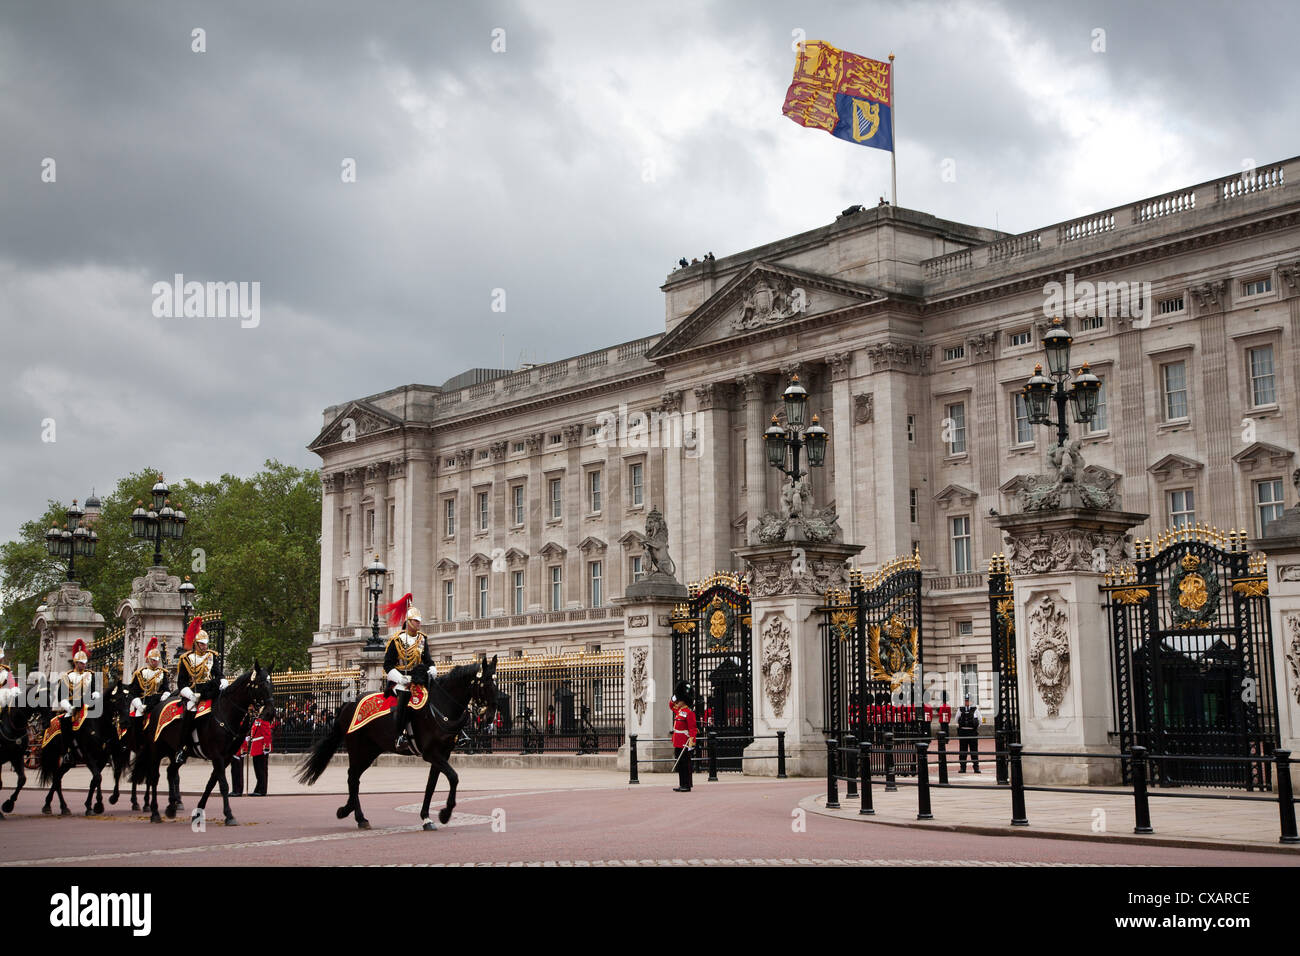 À la Household Cavalry Parade 2012 la cérémonie des couleurs sur le Mall et à Buckingham Palace, Londres, Angleterre, Royaume-Uni Banque D'Images